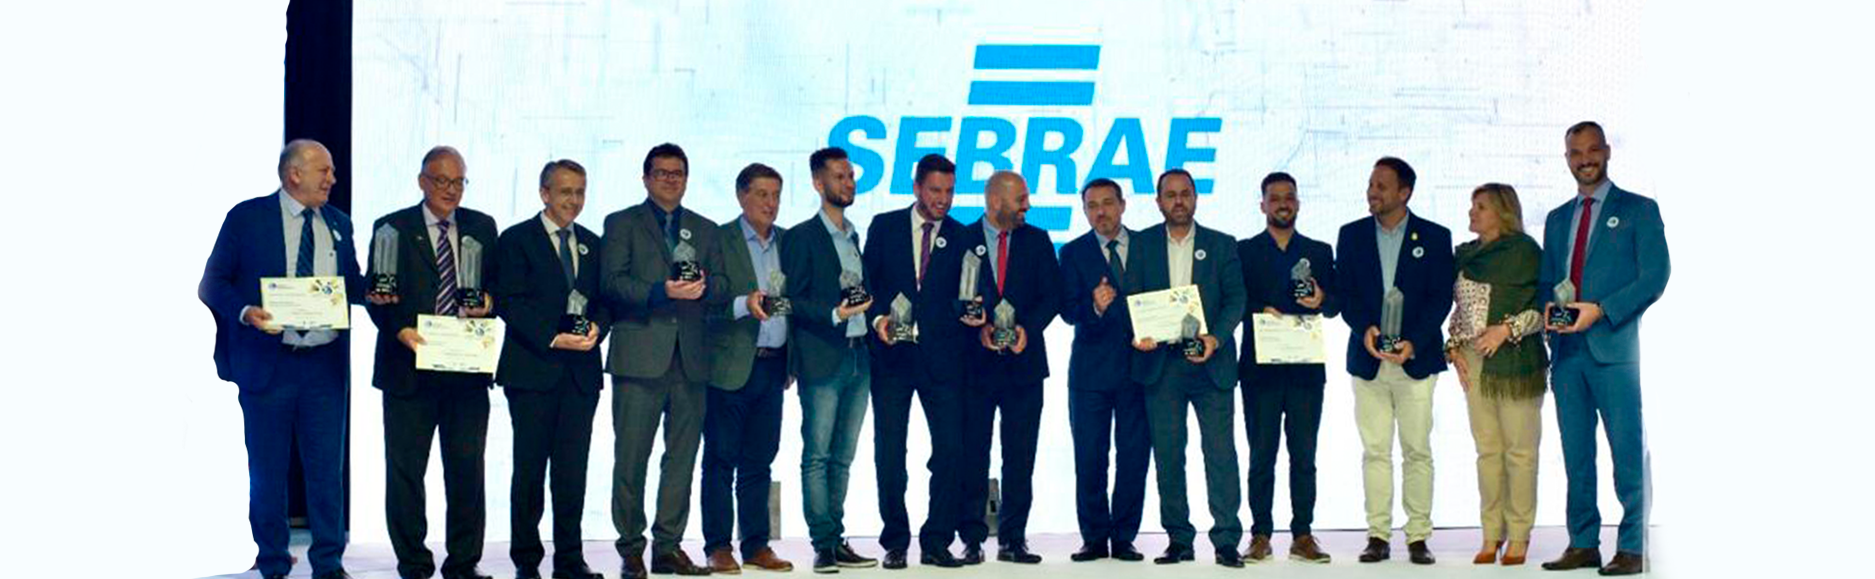 Pinhalzinho, Videira, Indaial e Rio do Sul vencem Prêmio Prefeito Empreendedor do Sebrae-SC